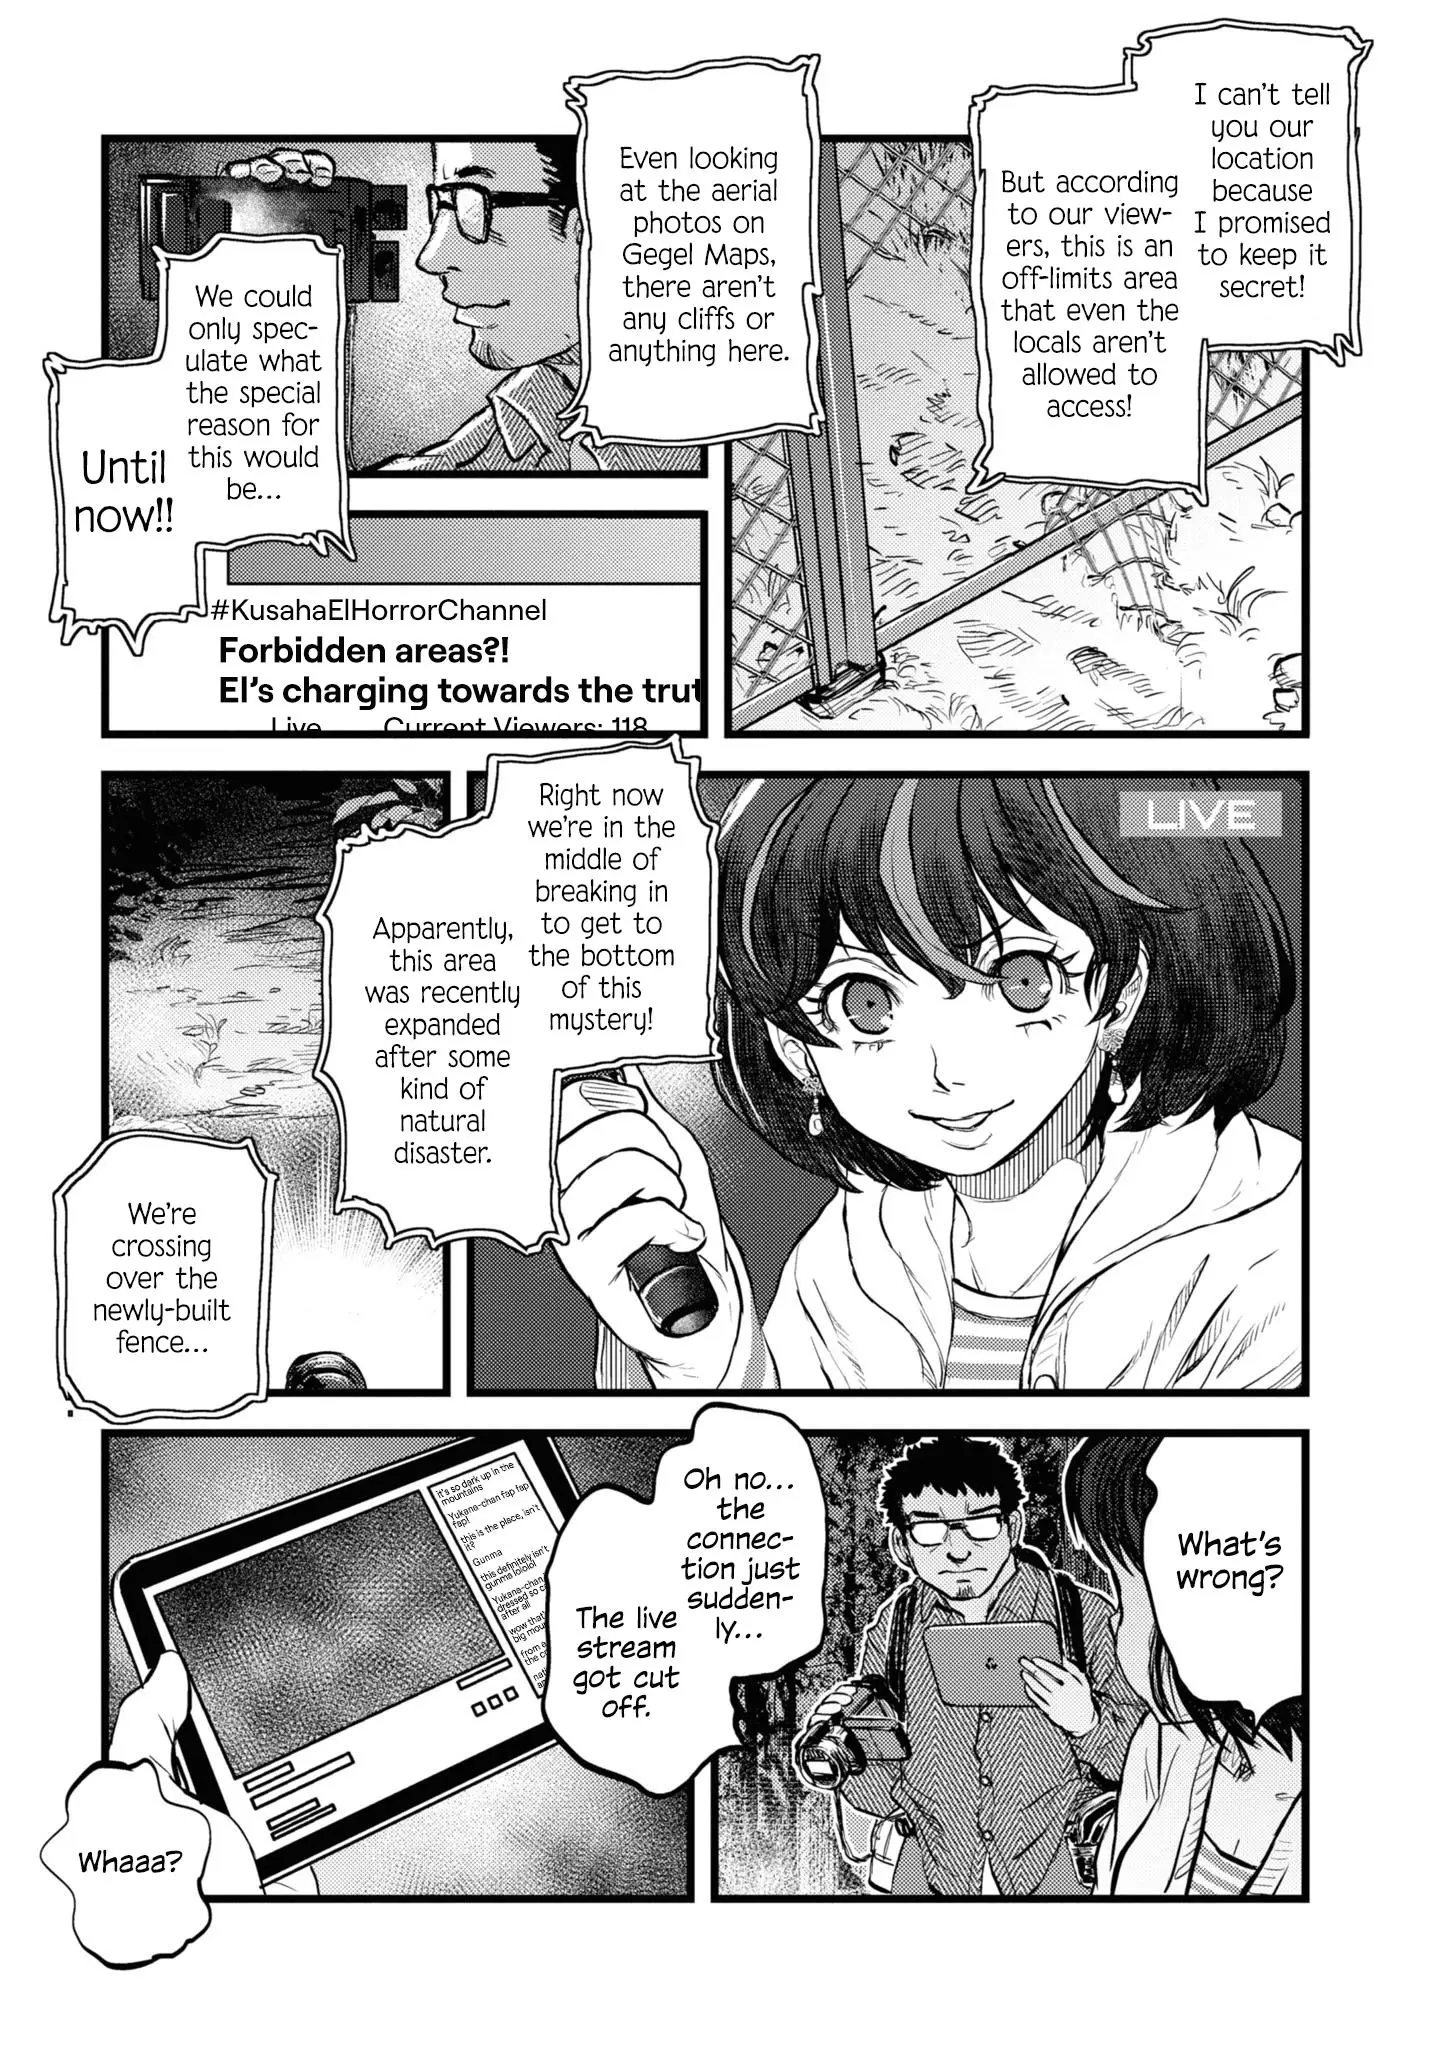 Reiwa No Dara-San - 14 page 14-059674b8